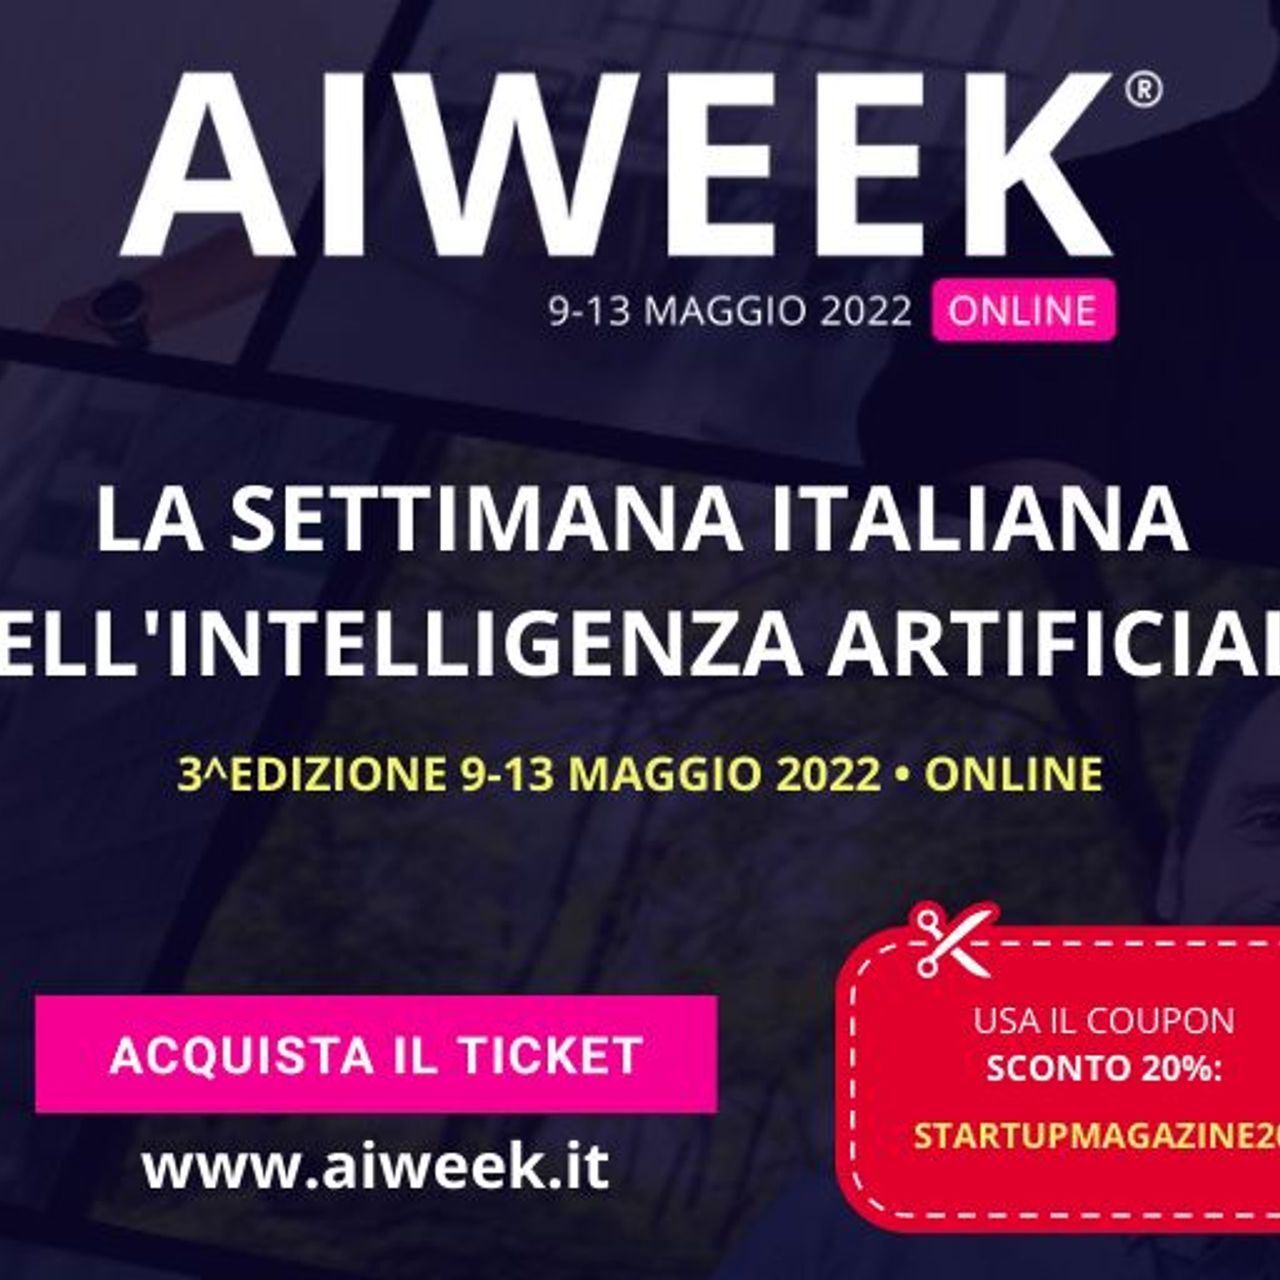 La frazione superiore della pagina per stampa e la locandina della “AI Week - settimana italiana dell'intelligenza artificiale”